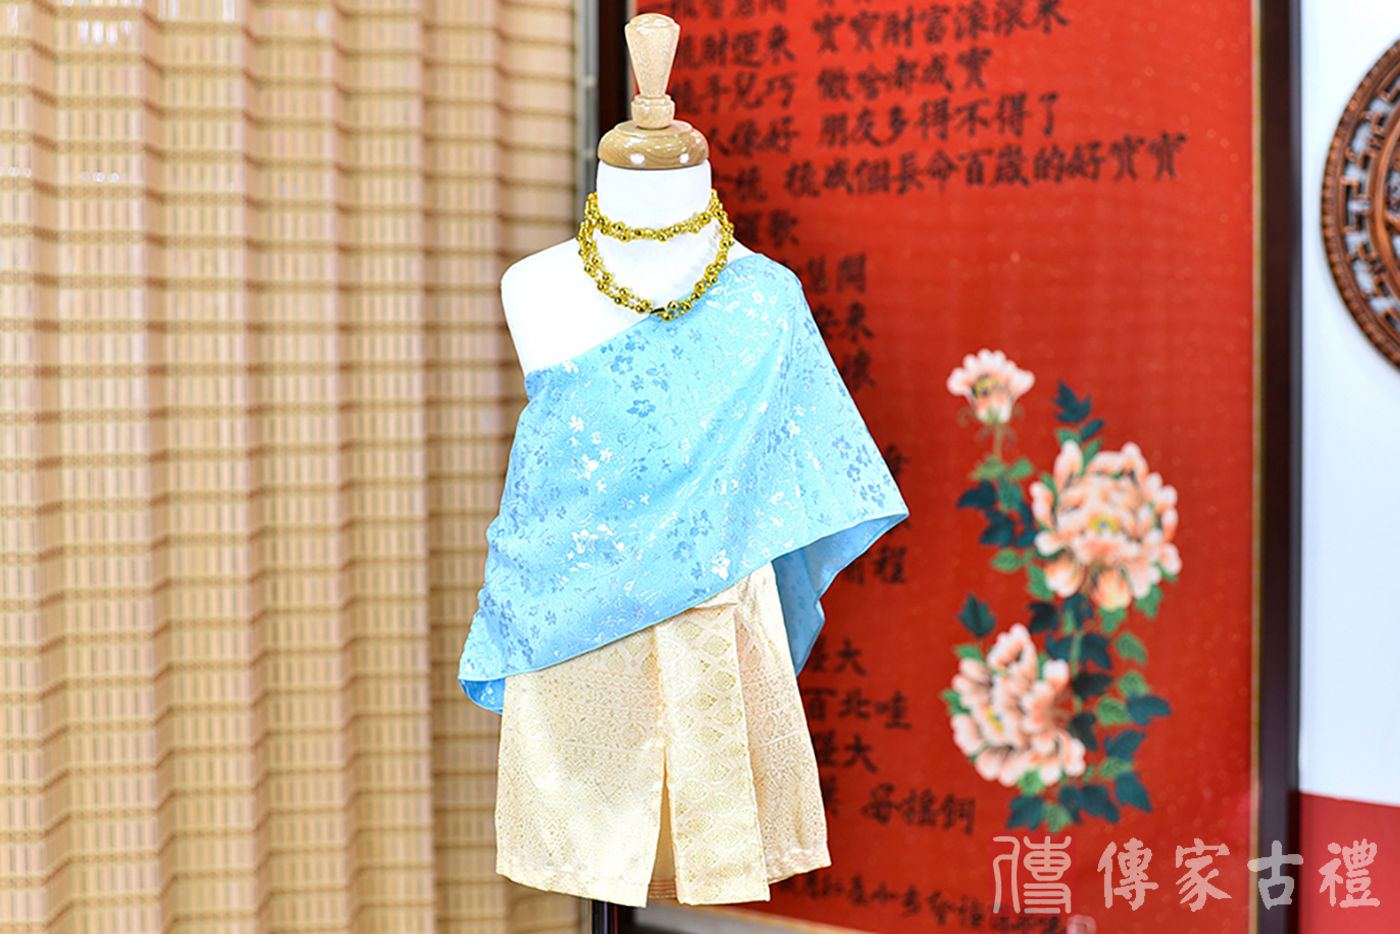 2024-02-23小孩皇室泰服古裝禮服。淺藍色的紋路披肩上衣搭配金色泰國圖案紋路裙裝的泰式古裝禮服。照片集